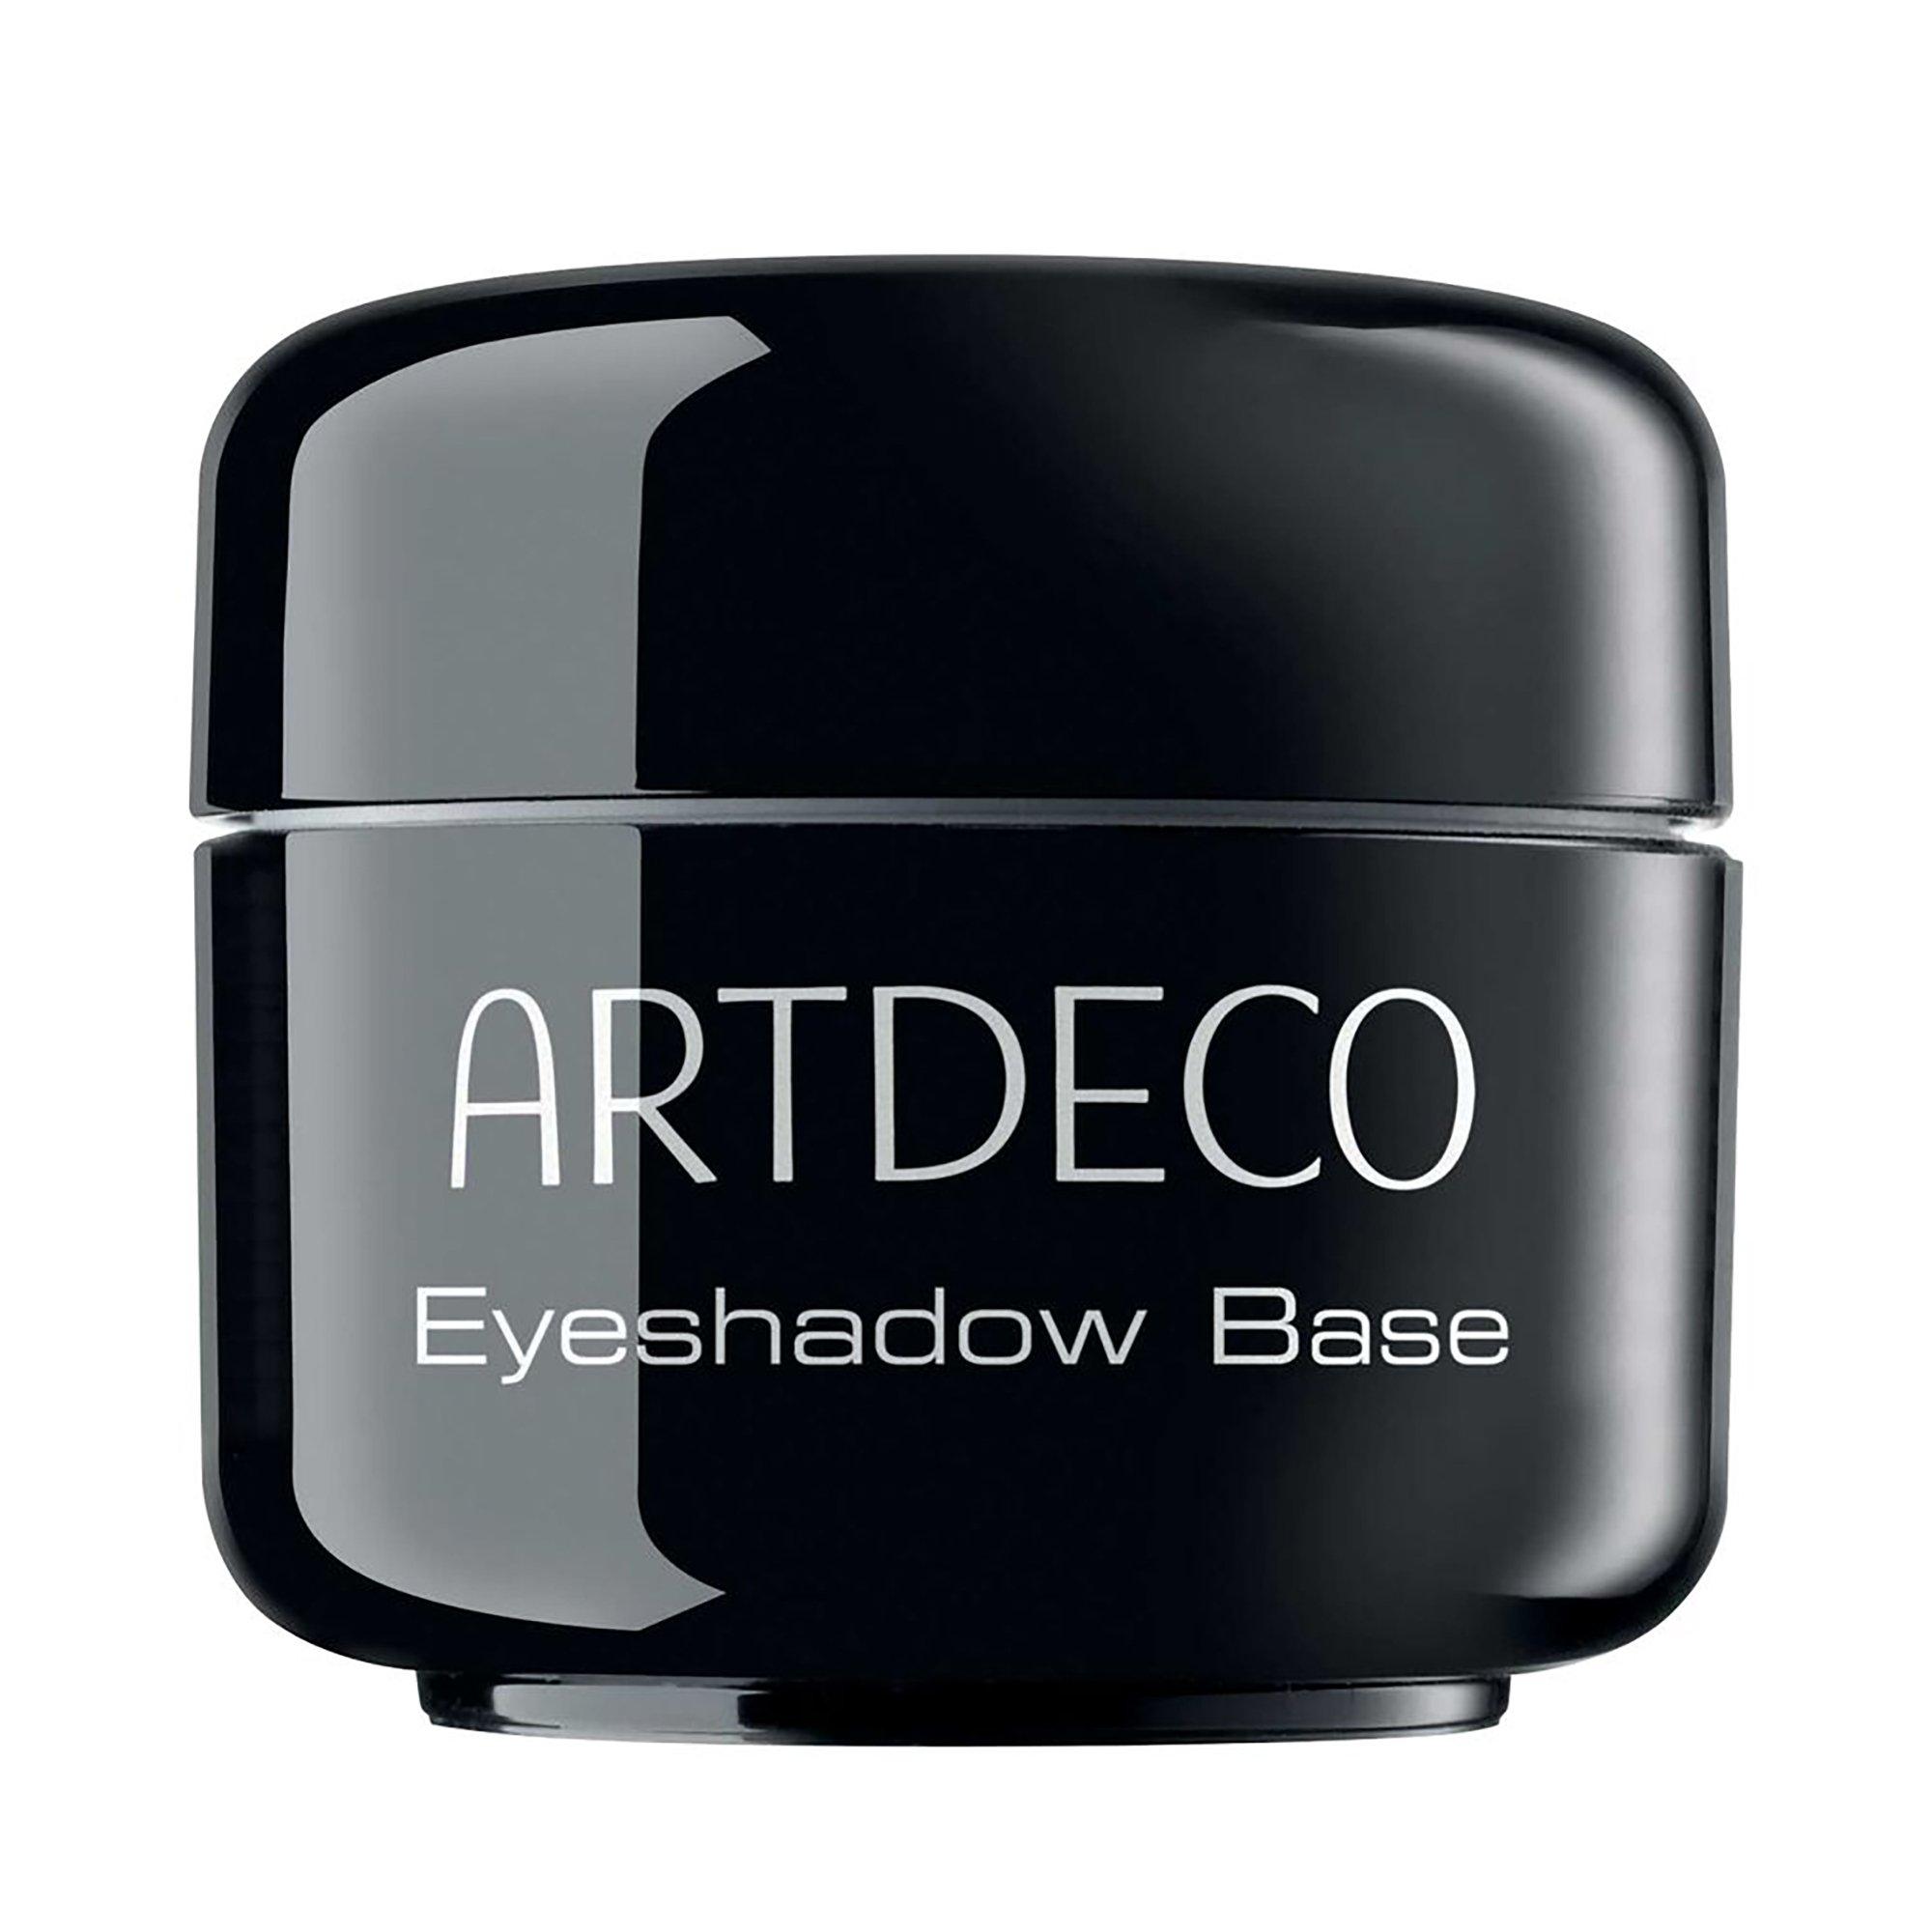 Image of ARTDECO Eyeshadow Base - 5ml